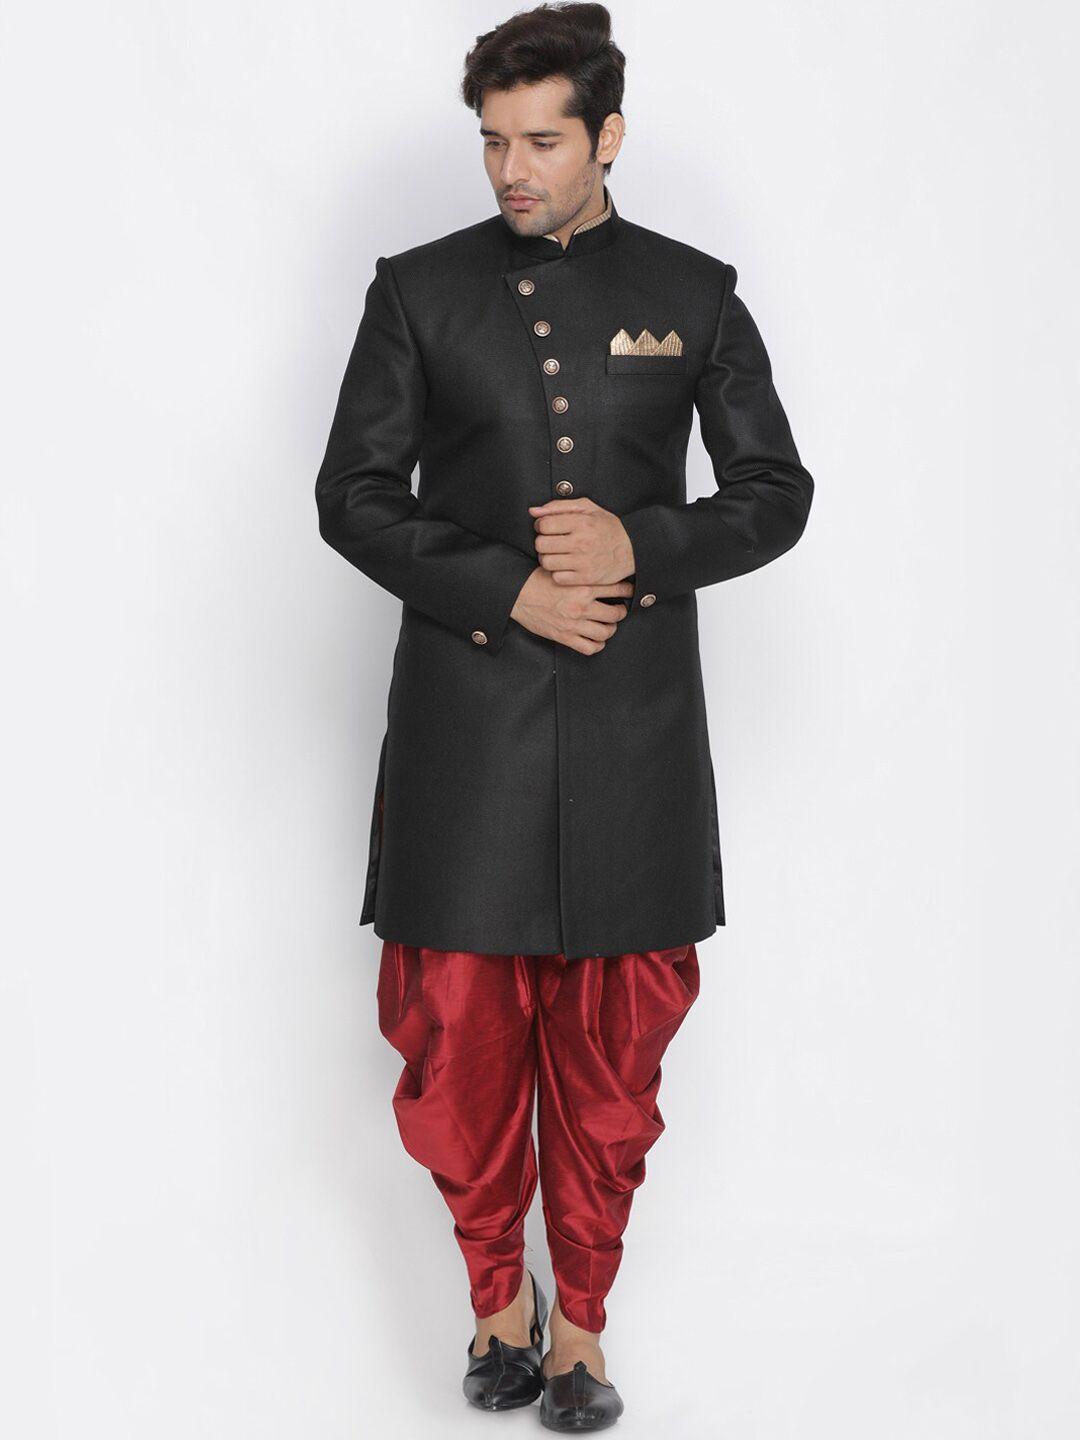 vm-mandarin-collar-jute-cotton-slim-fit-indowestern-sherwani-set